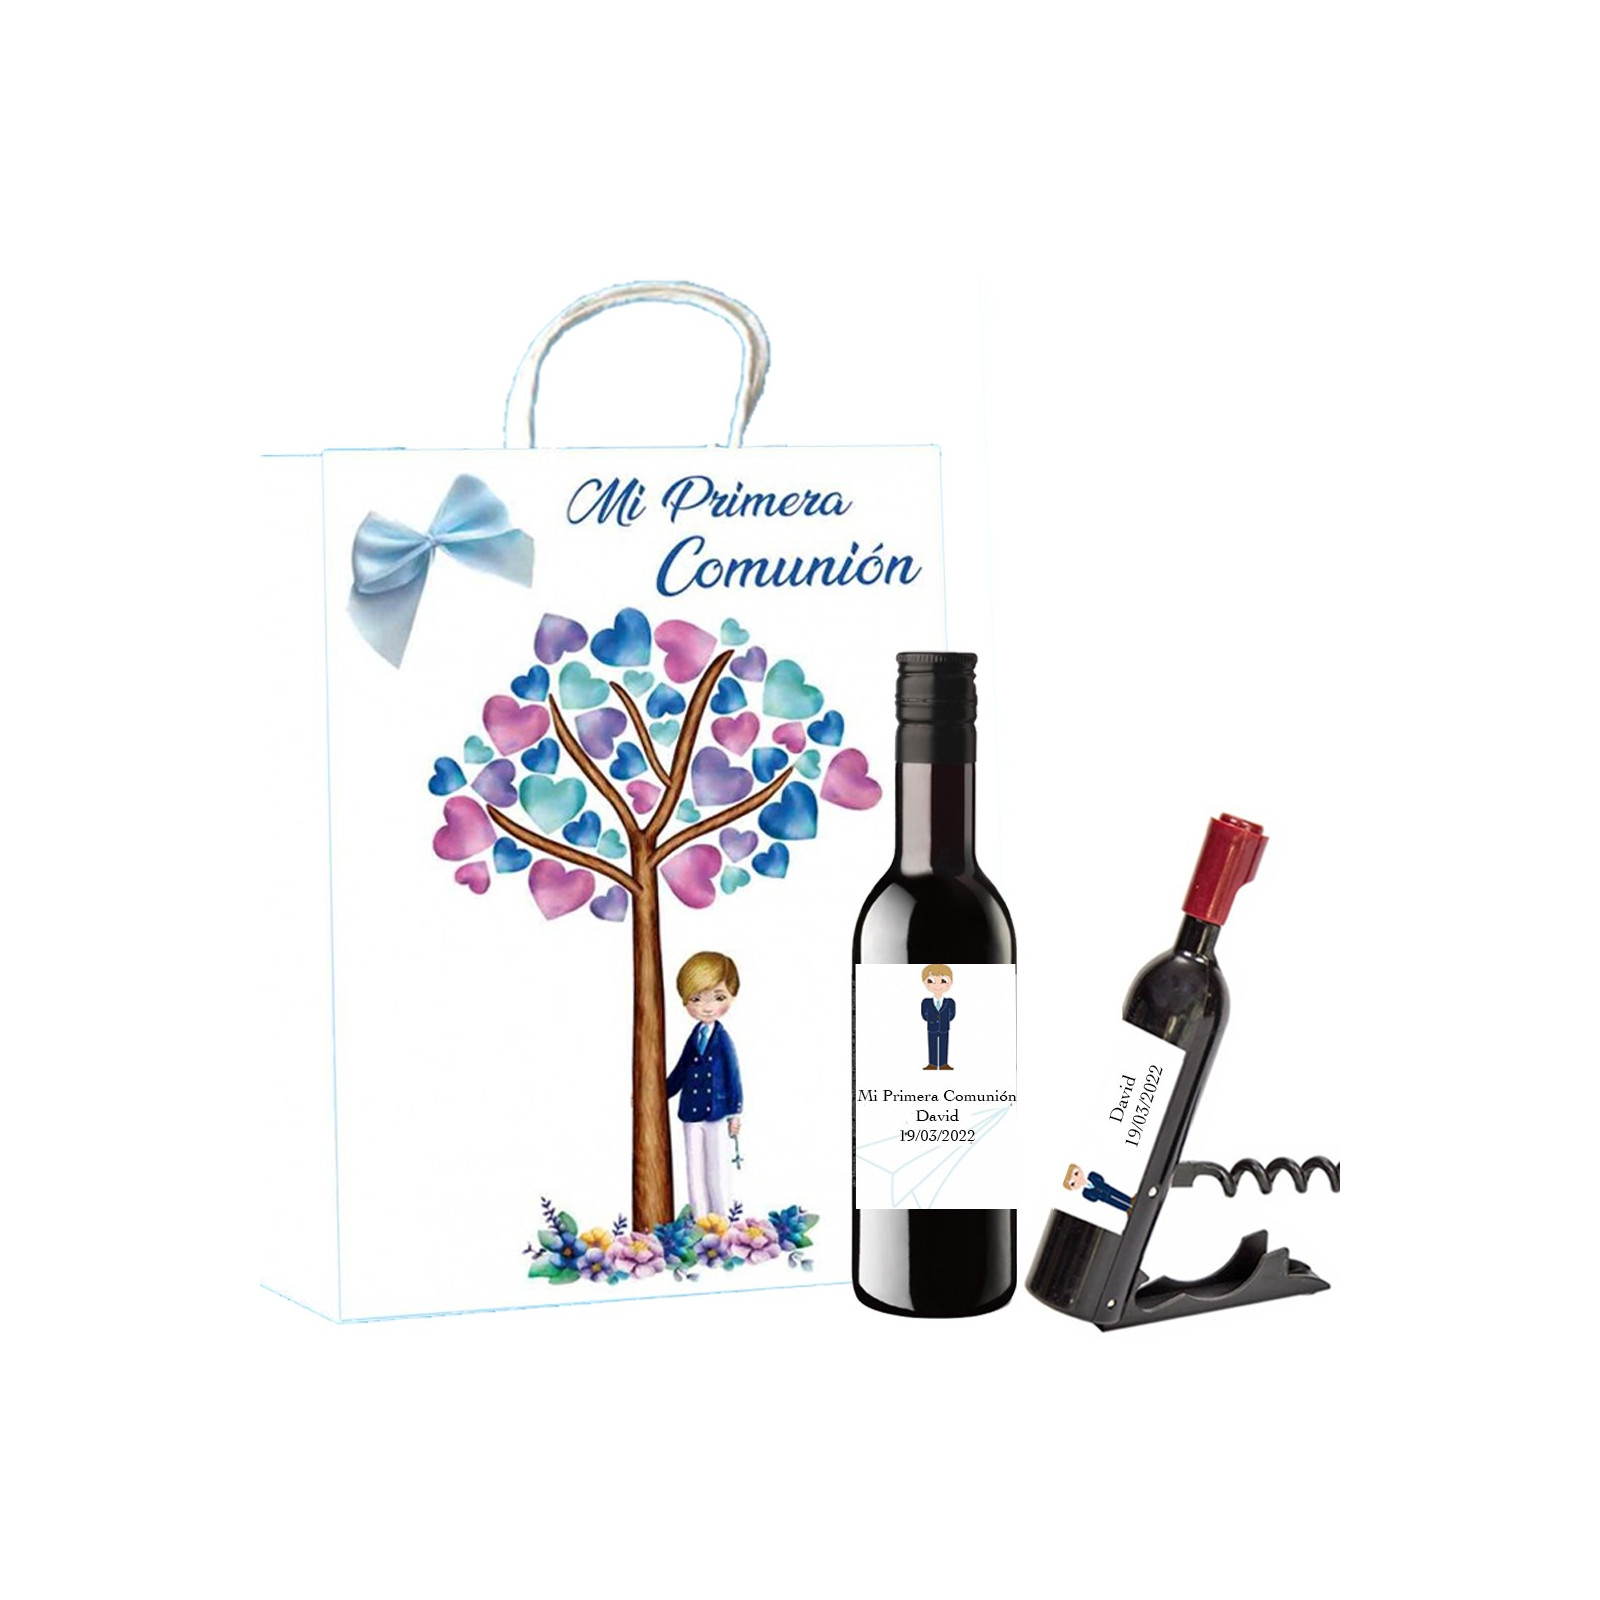 Bottiglia di vino e cavatappi personalizzati nella borsa per la comunione del ragazzo